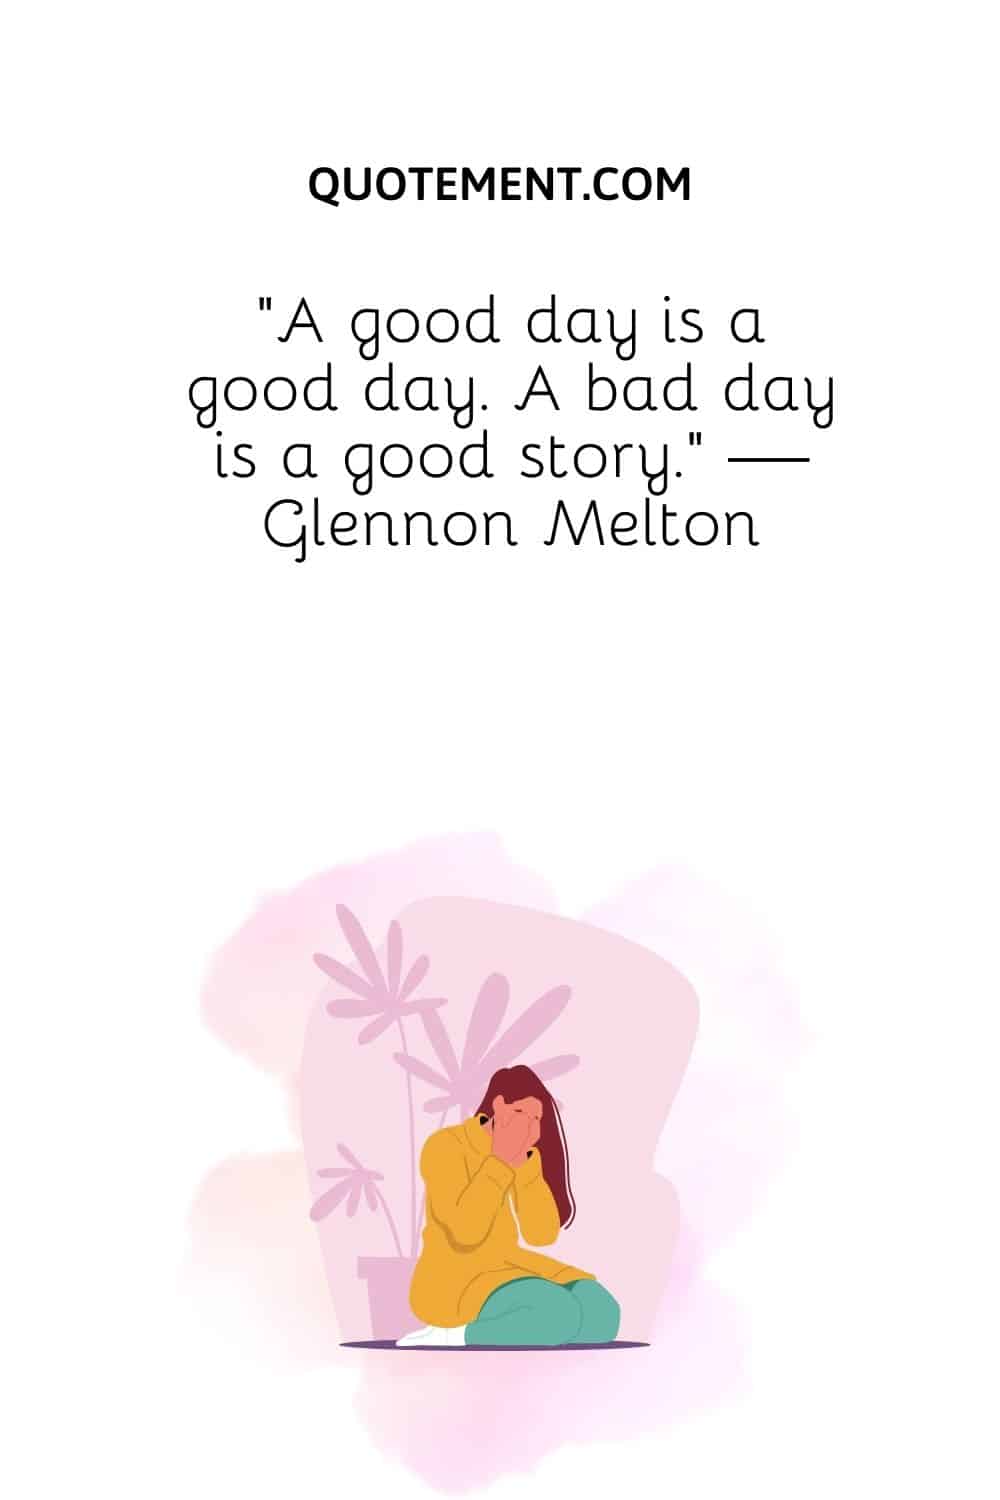 A good day is a good day. A bad day is a good story